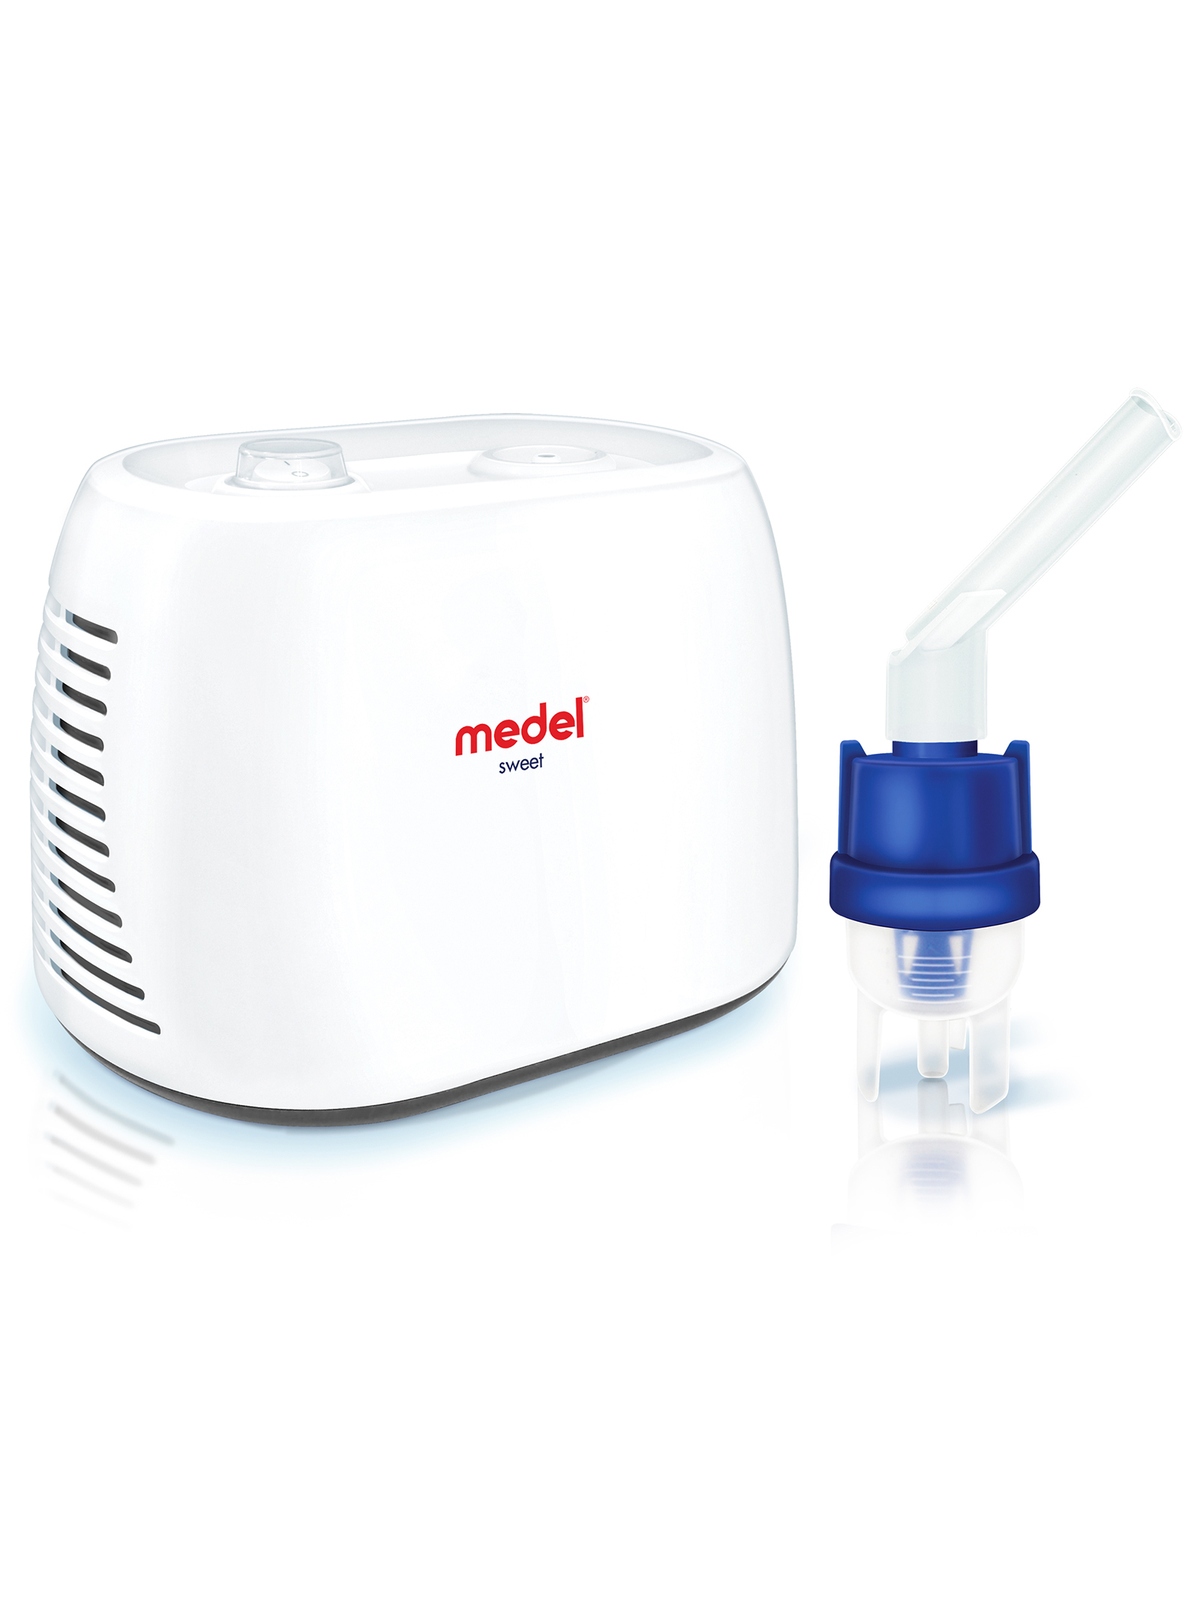 Sweet-aerosol moderno e compatto - Medel